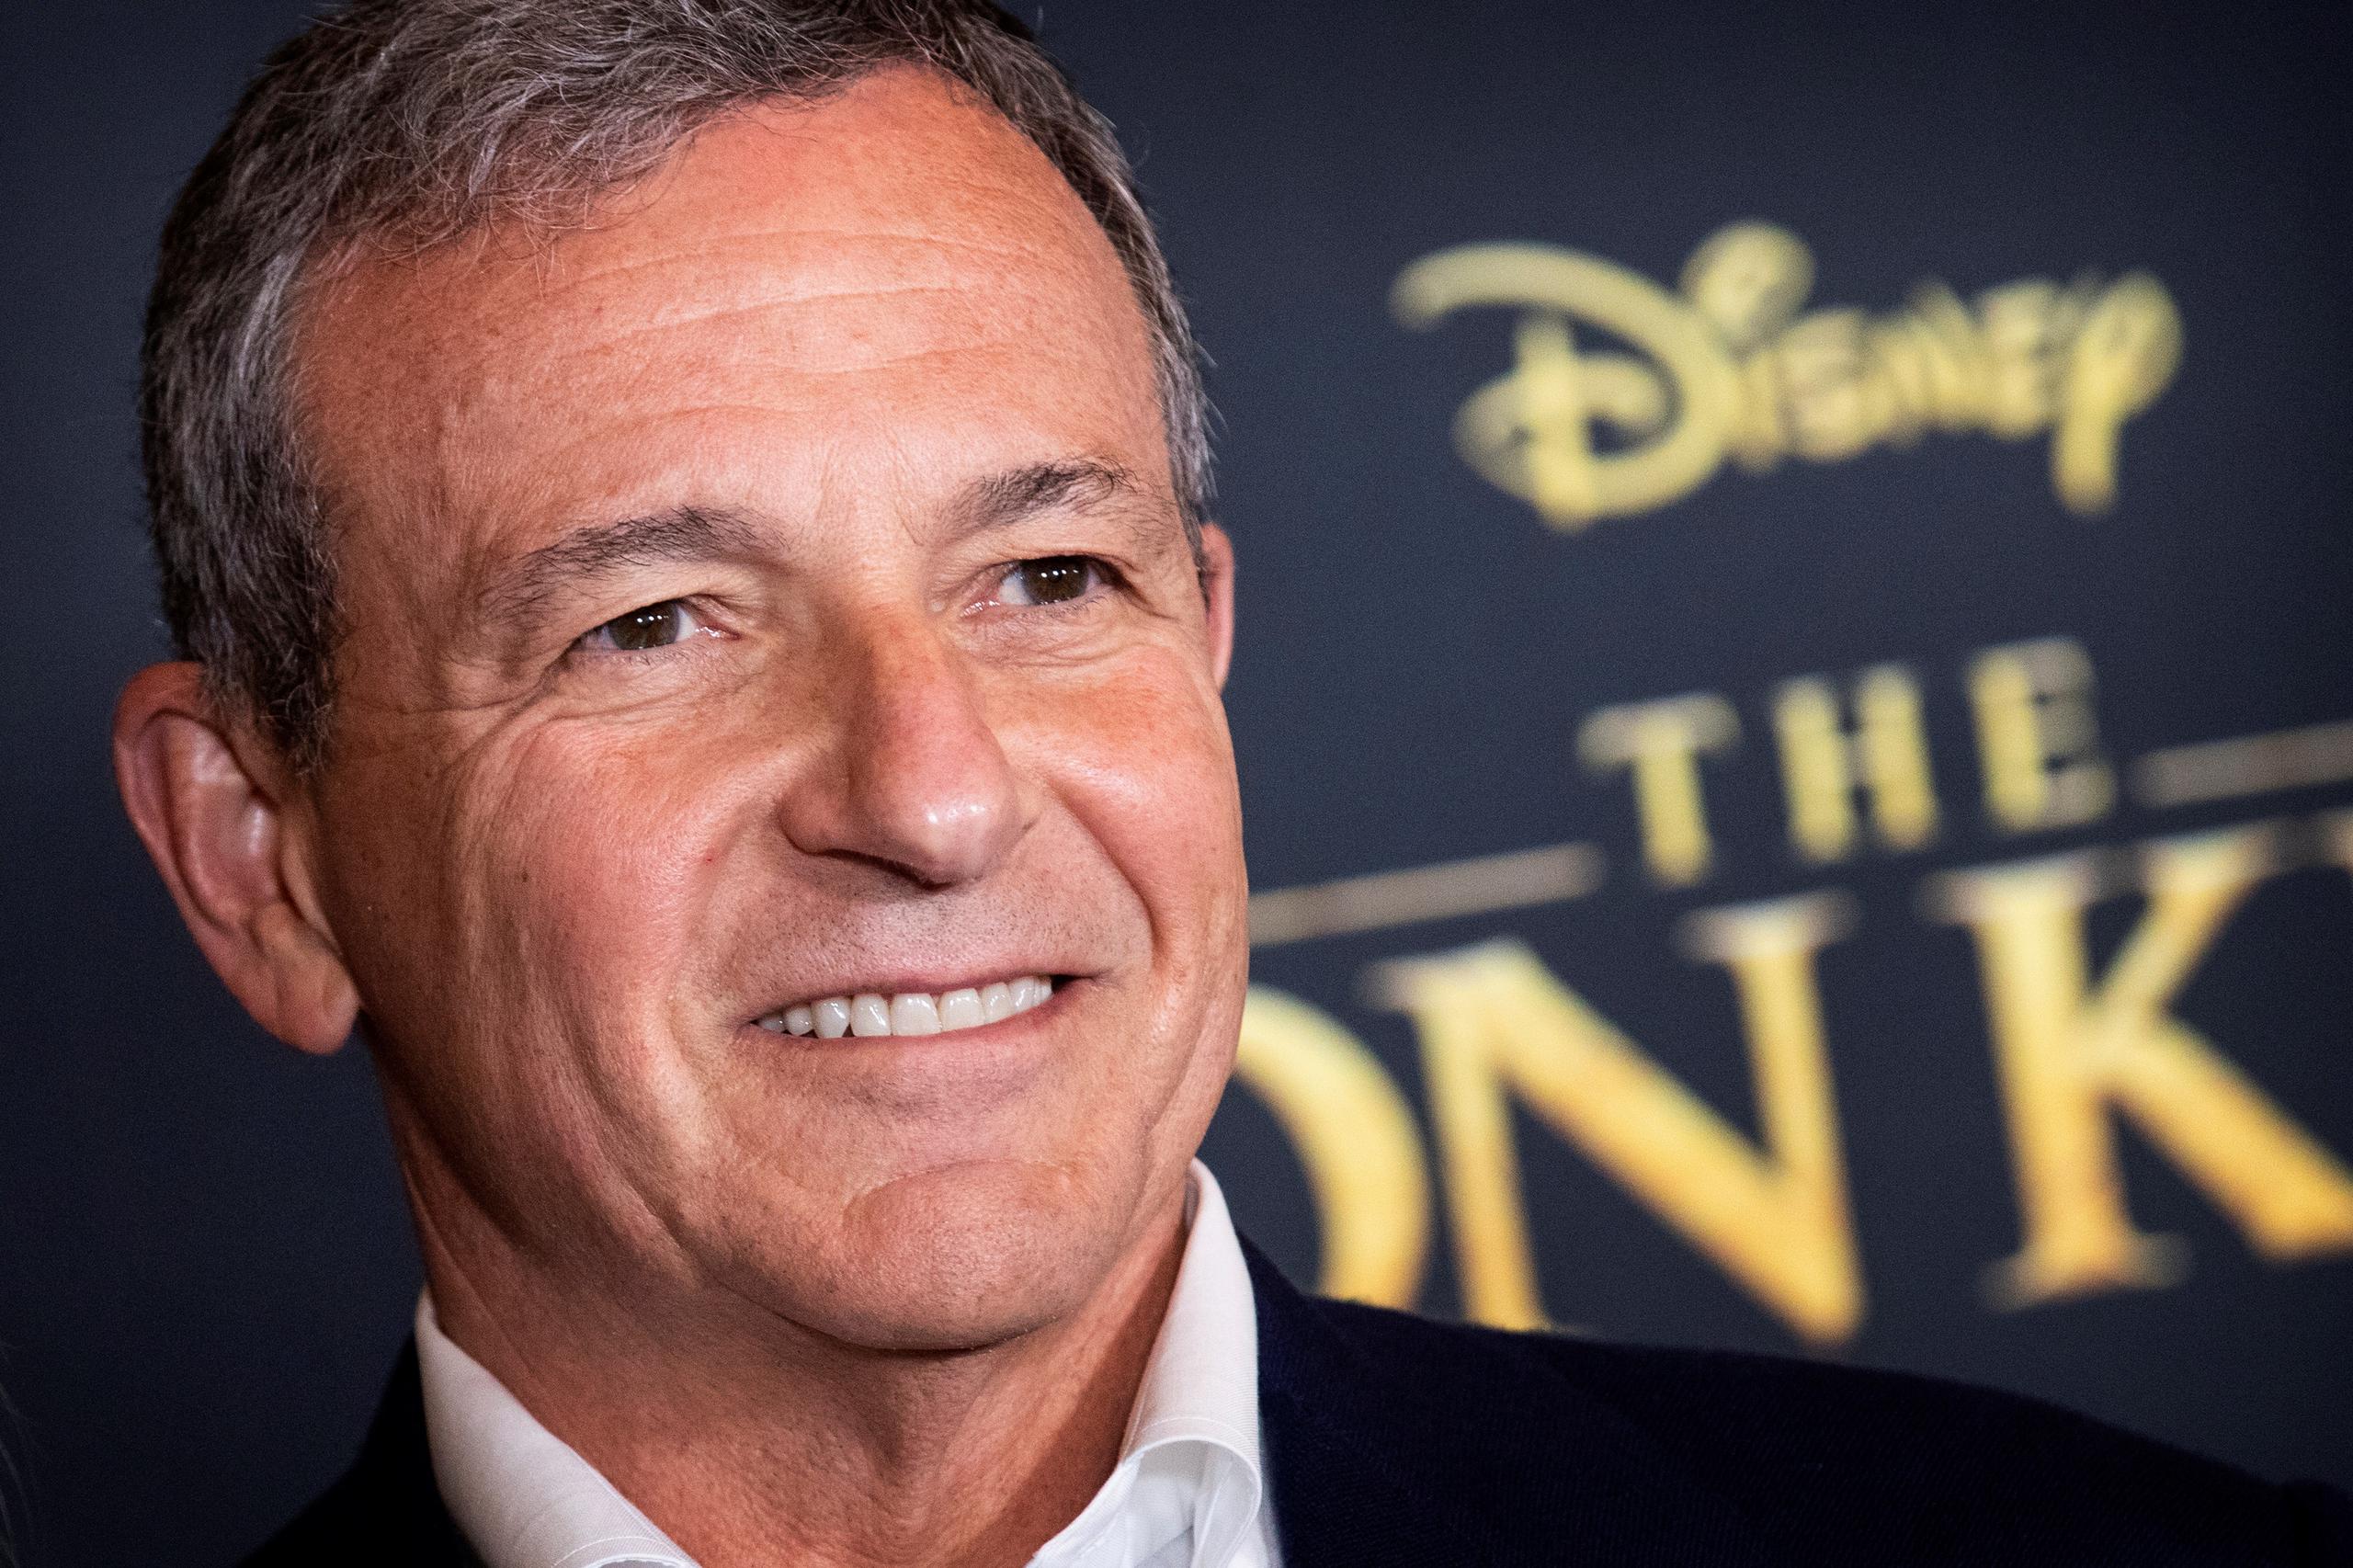 El primer ejecutivo de Disney, Bob Iger, anunció recientemente que renunciaba a cobrar su salario mientras dure la pandemia.